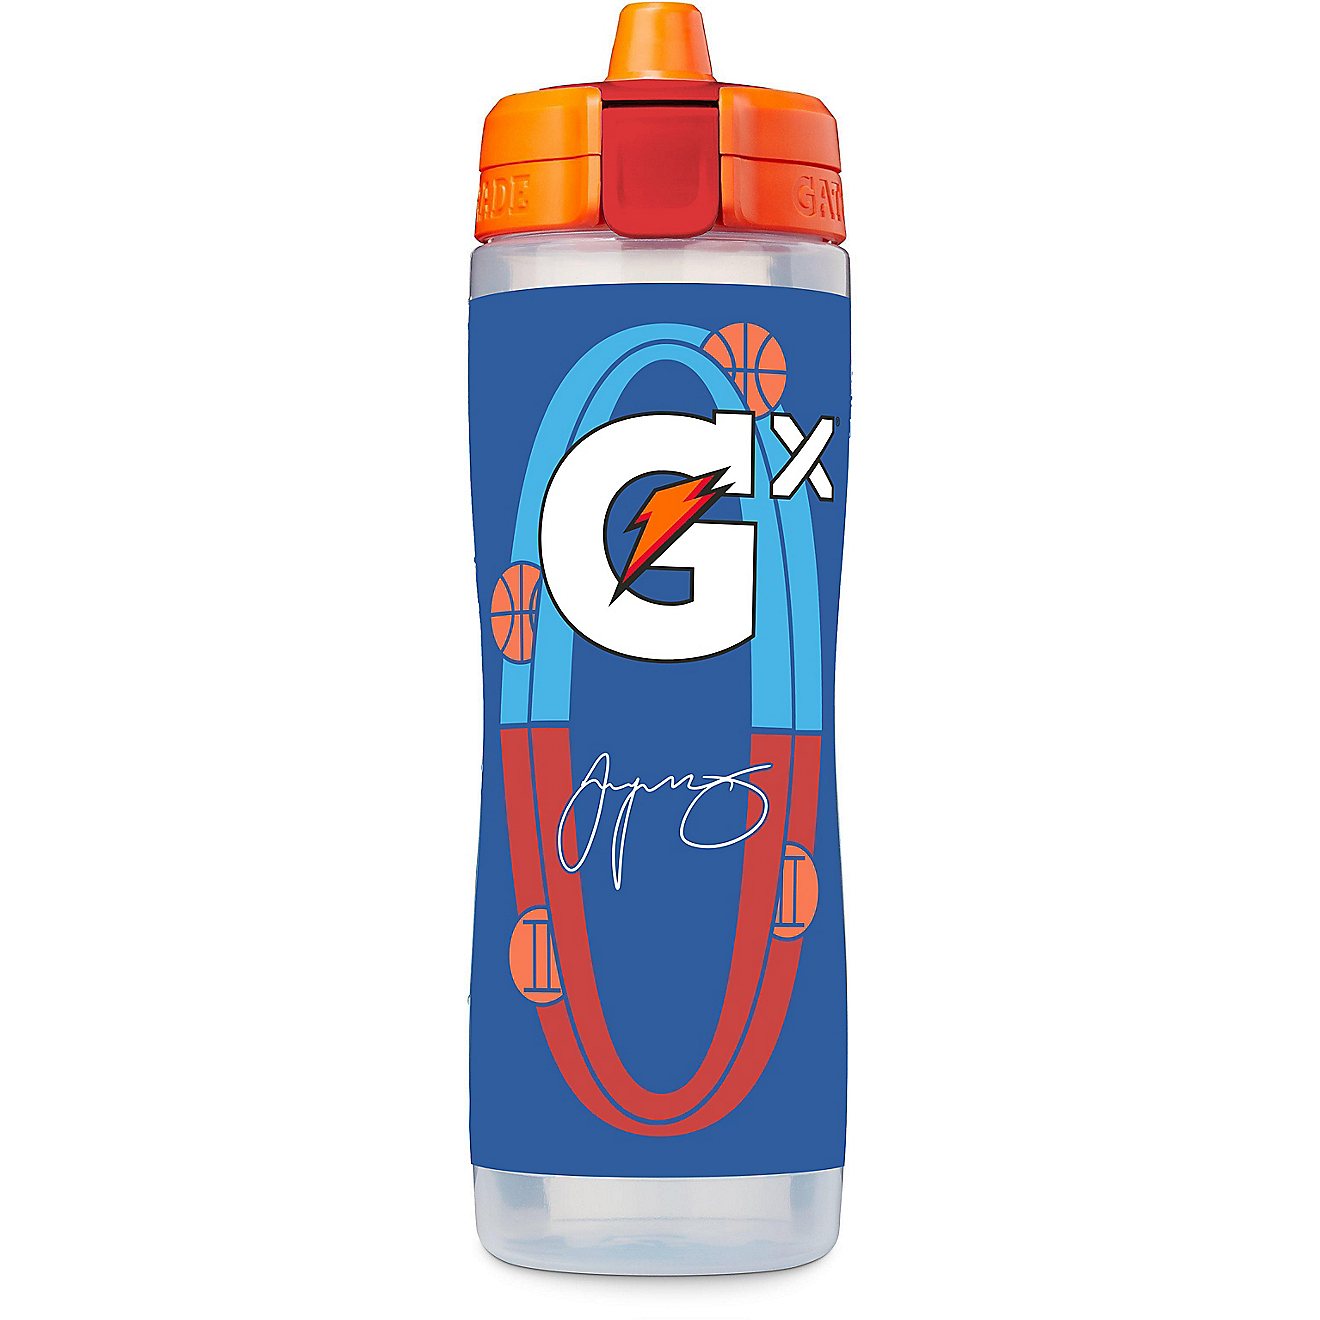 Gatorade 30oz Gx Squeeze Bottle